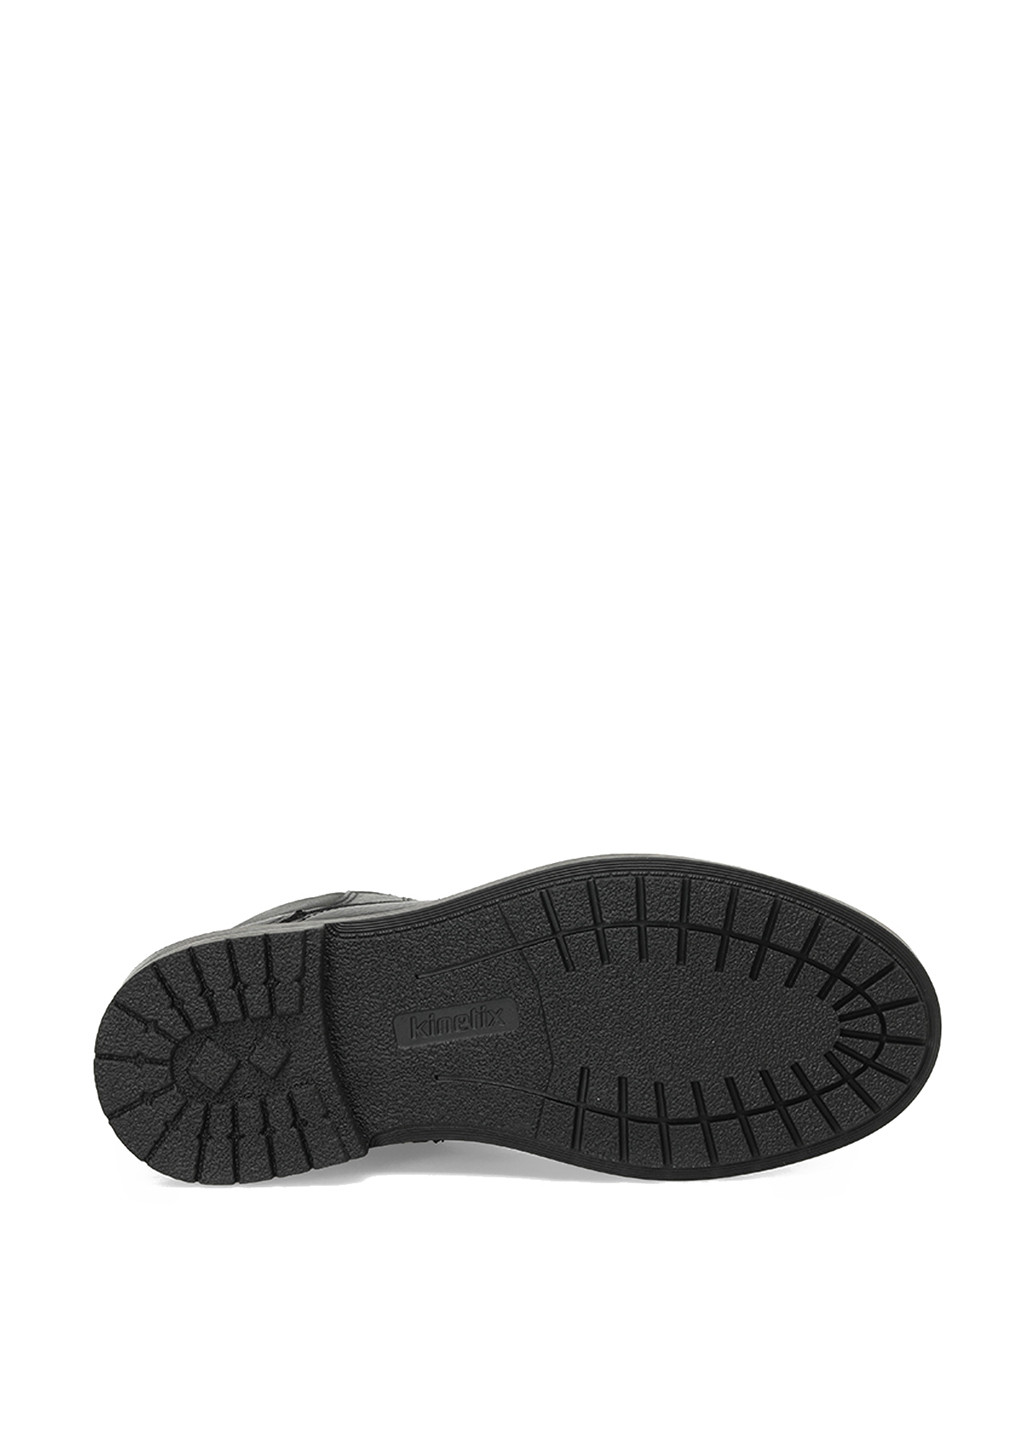 Черные осенние ботинки берцы Kinetix